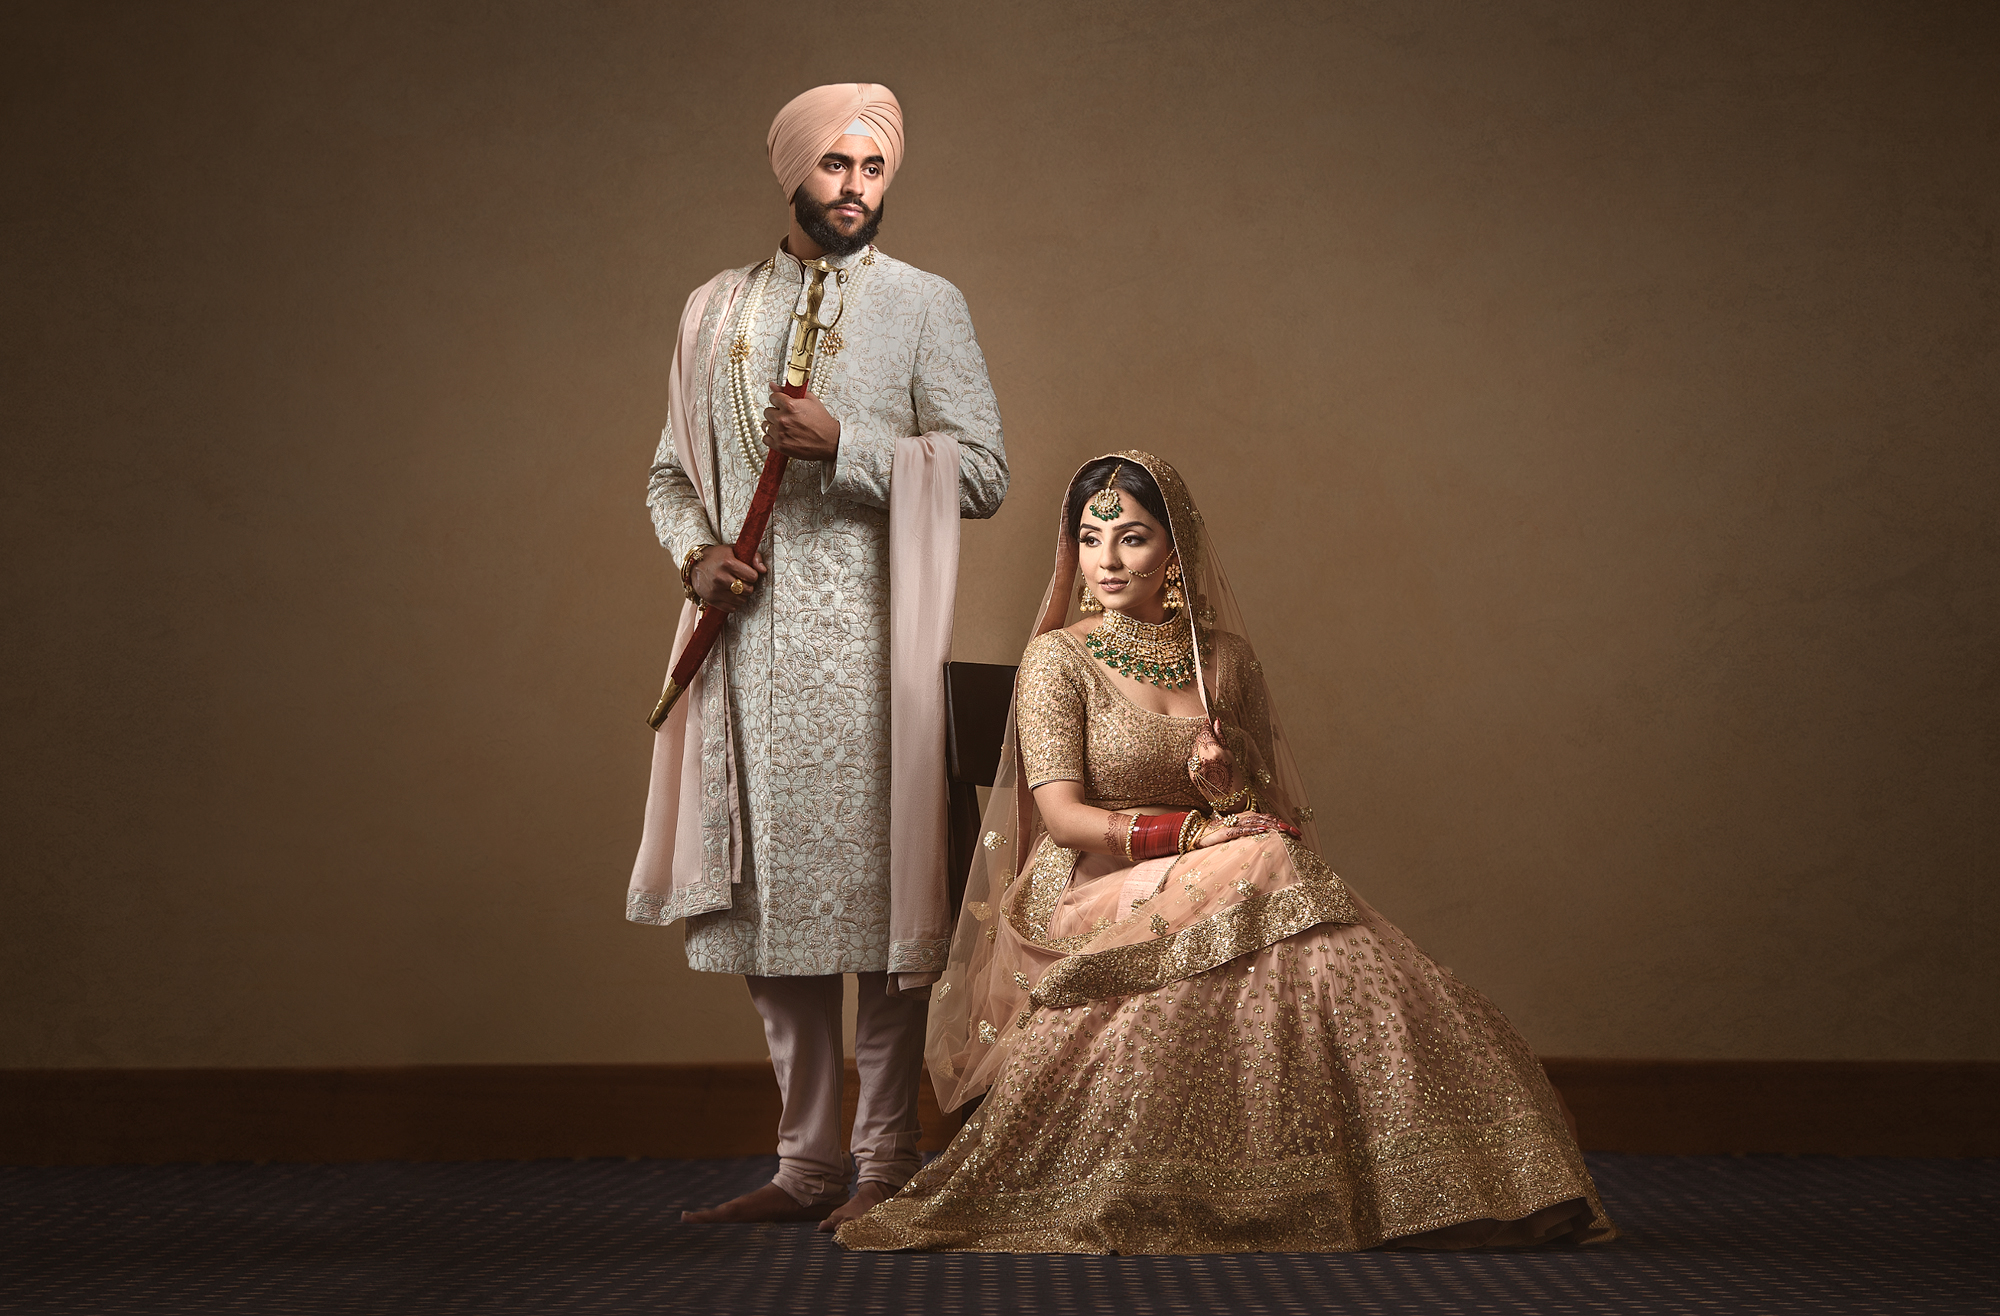 satnam Photography sik hwedding luxury wedding photography havelock gurdwara southall